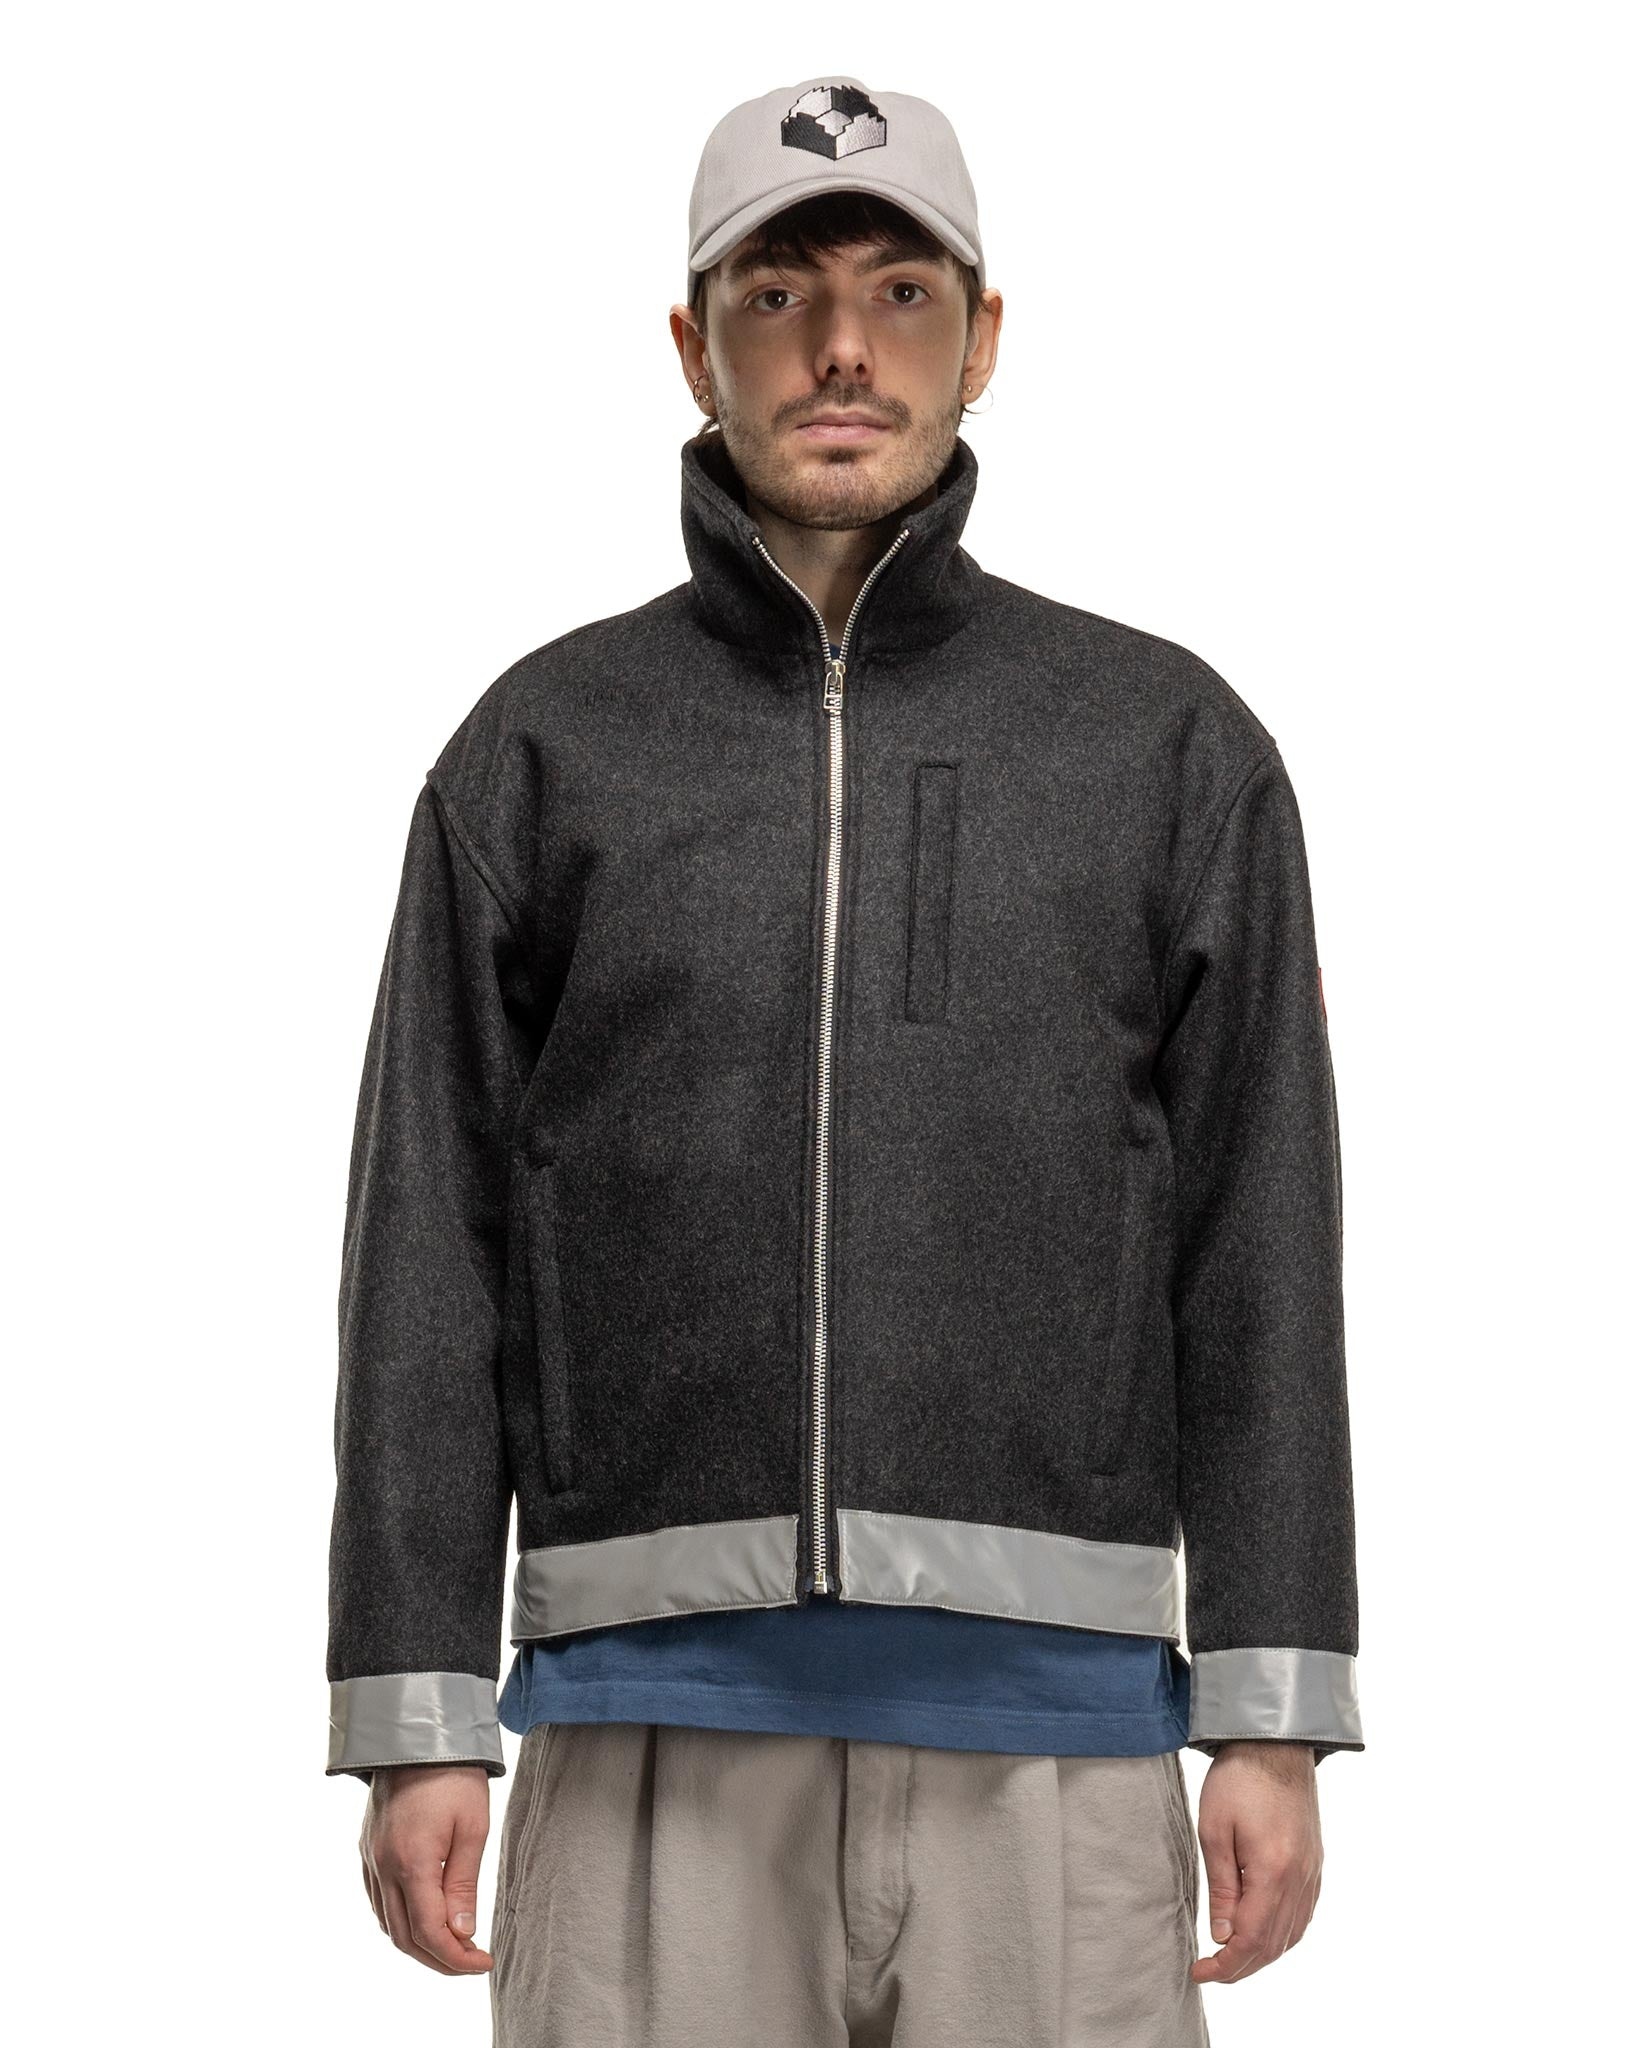 Reflect Wool Zip Jacket Charcoal - 4